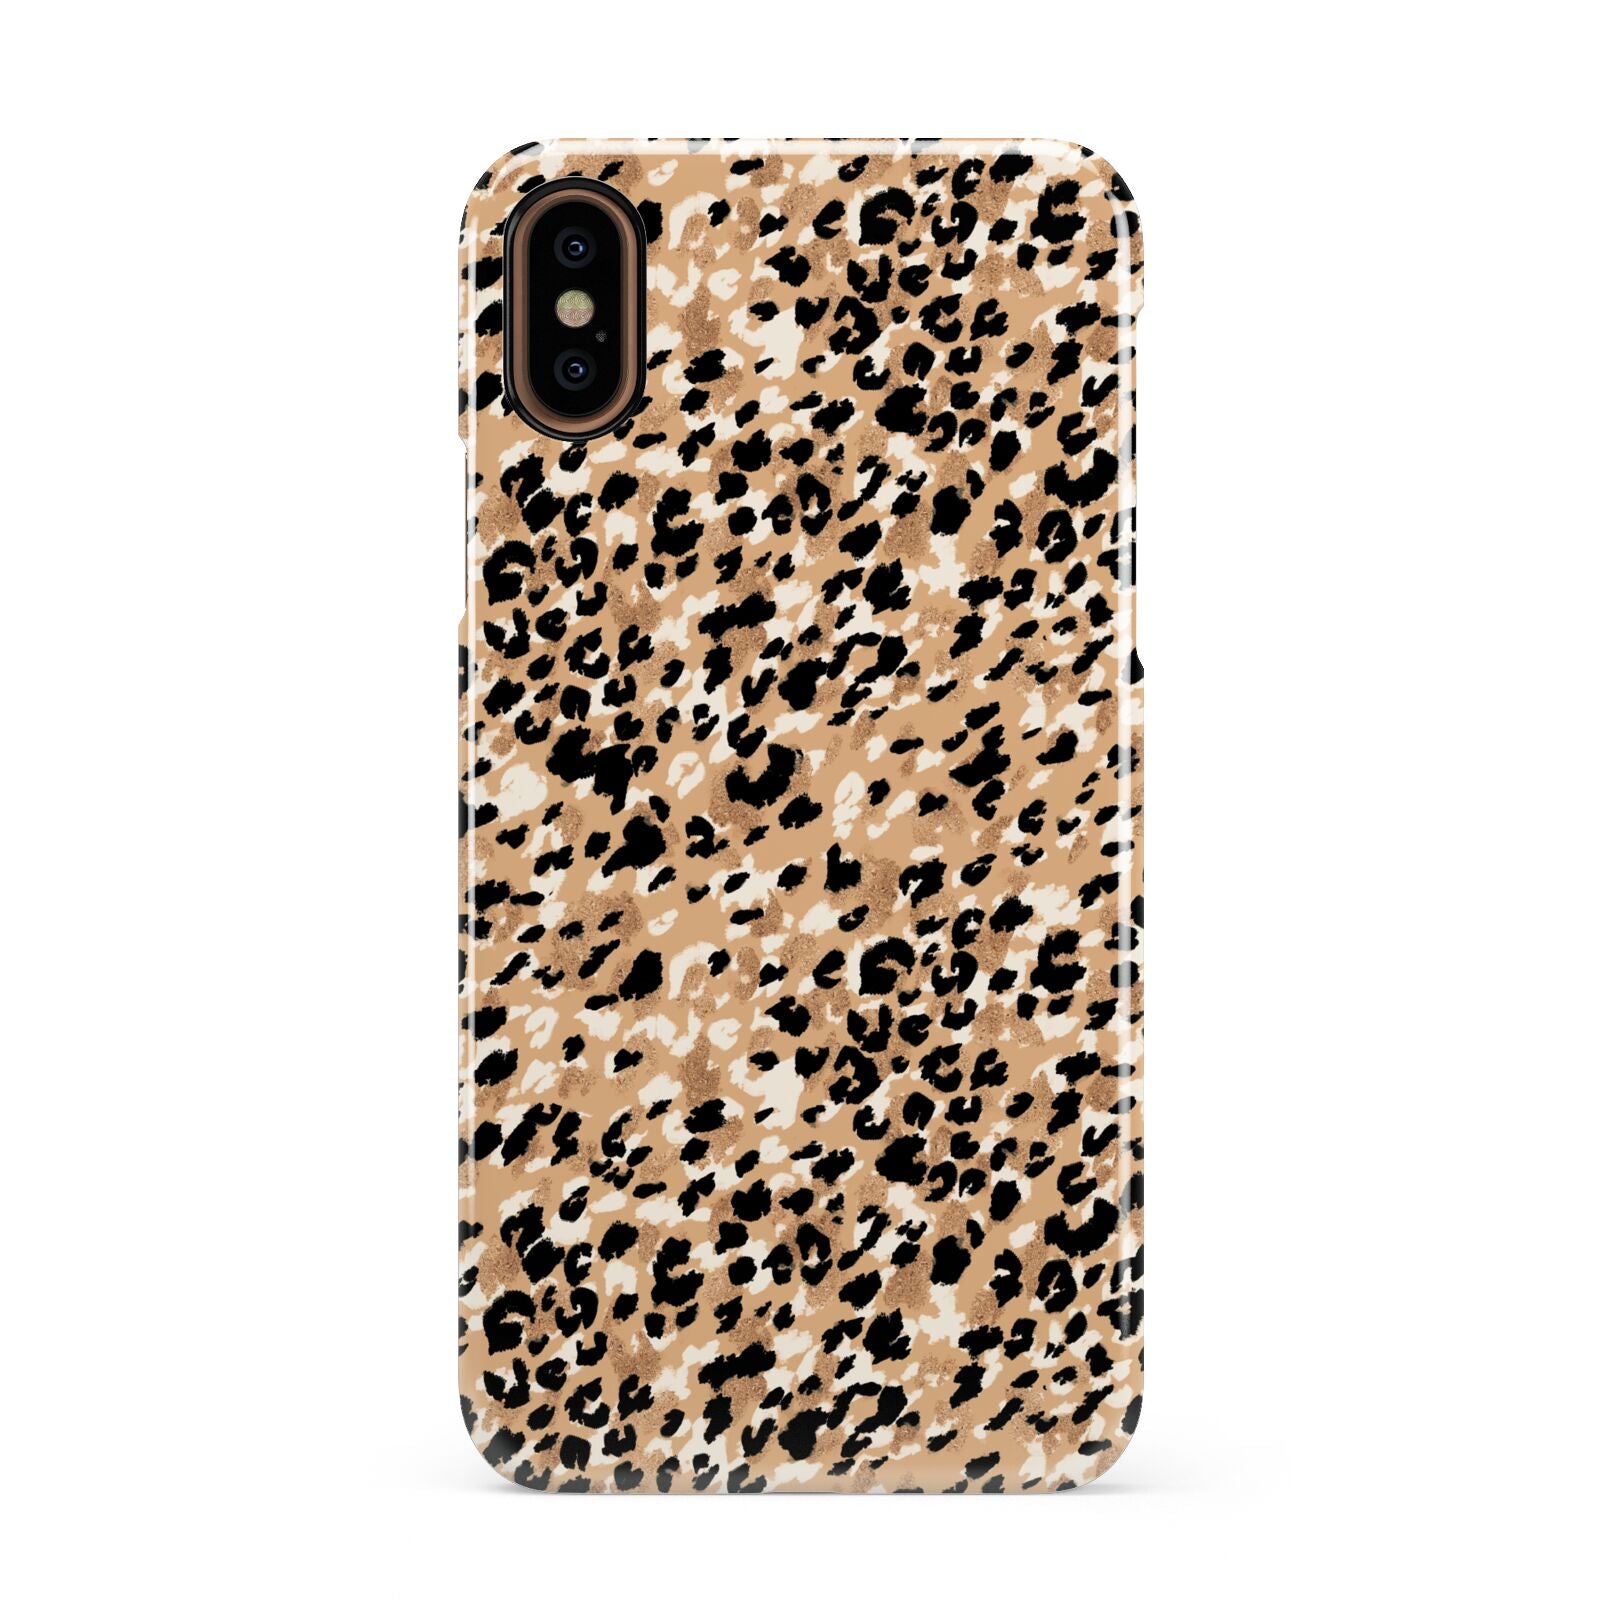 Leopard Print Apple iPhone XS 3D Snap Case